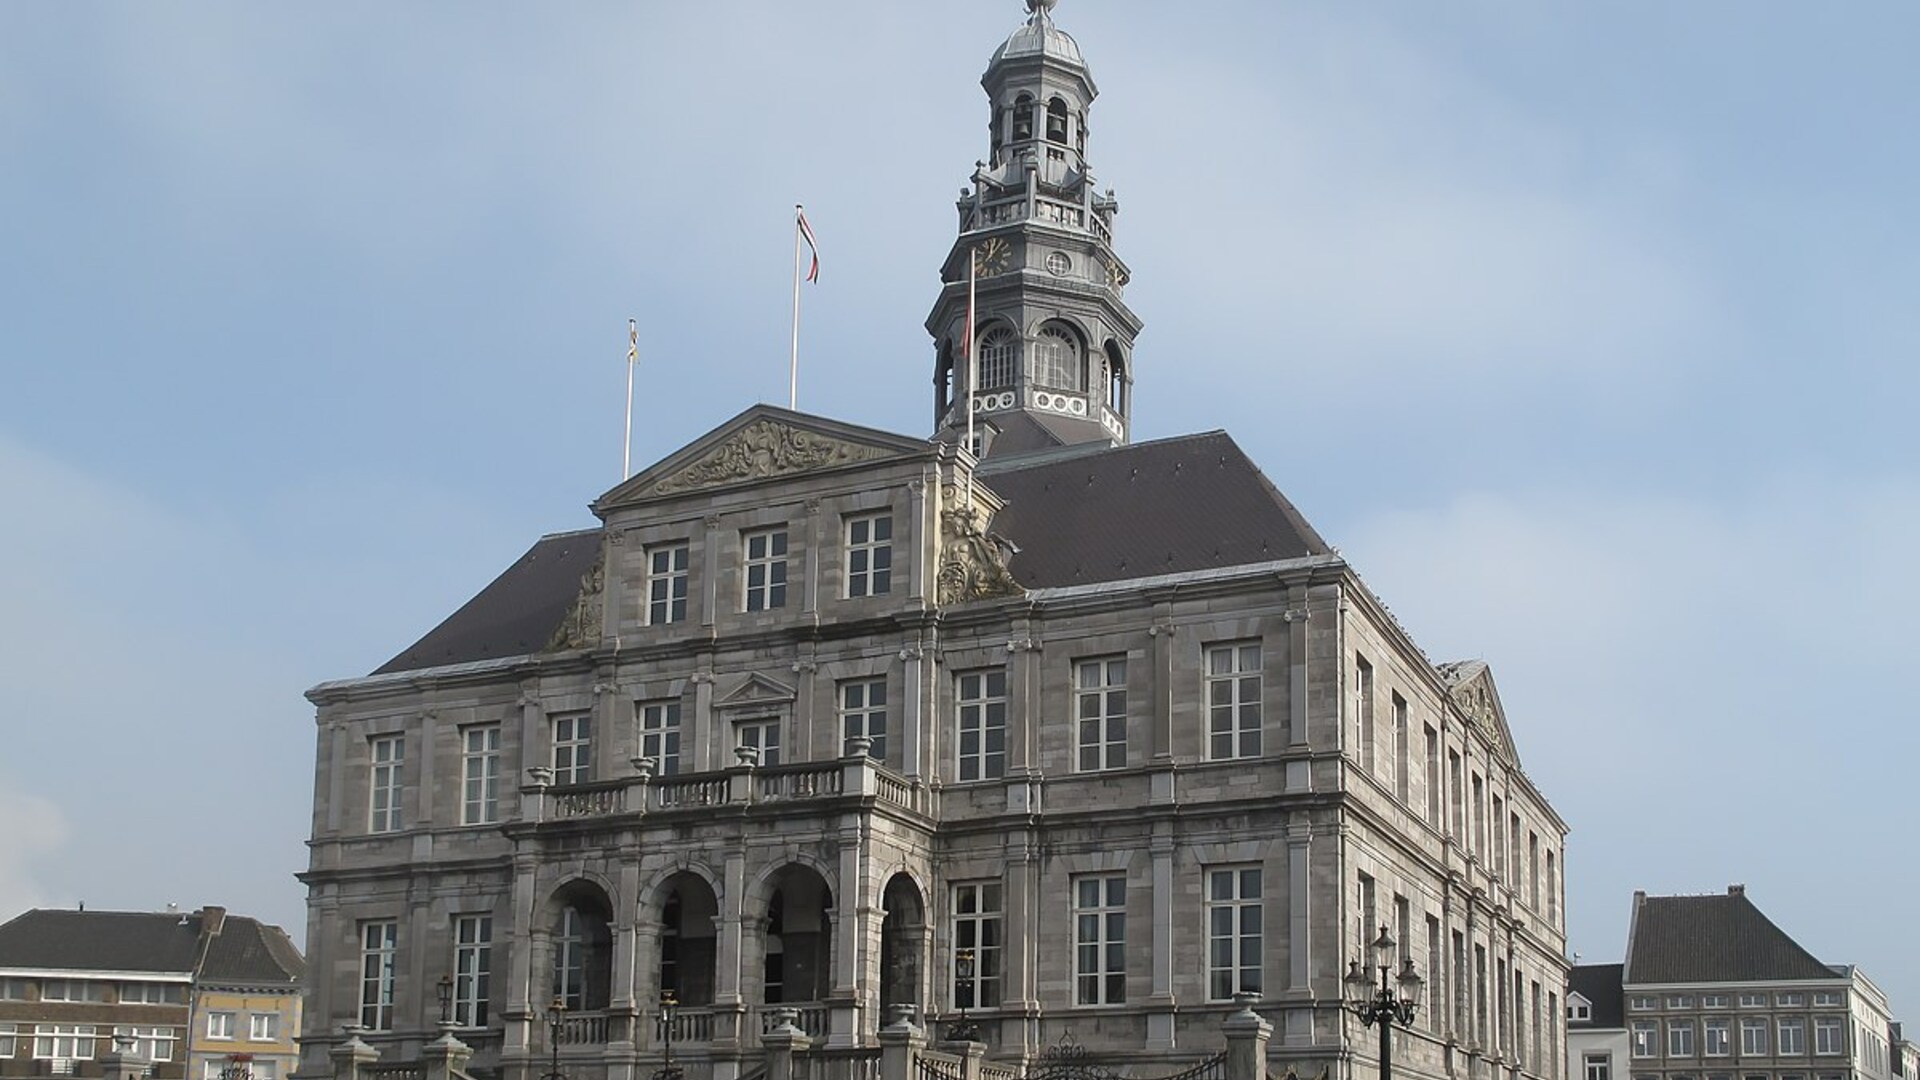 Stadshuis Maastricht